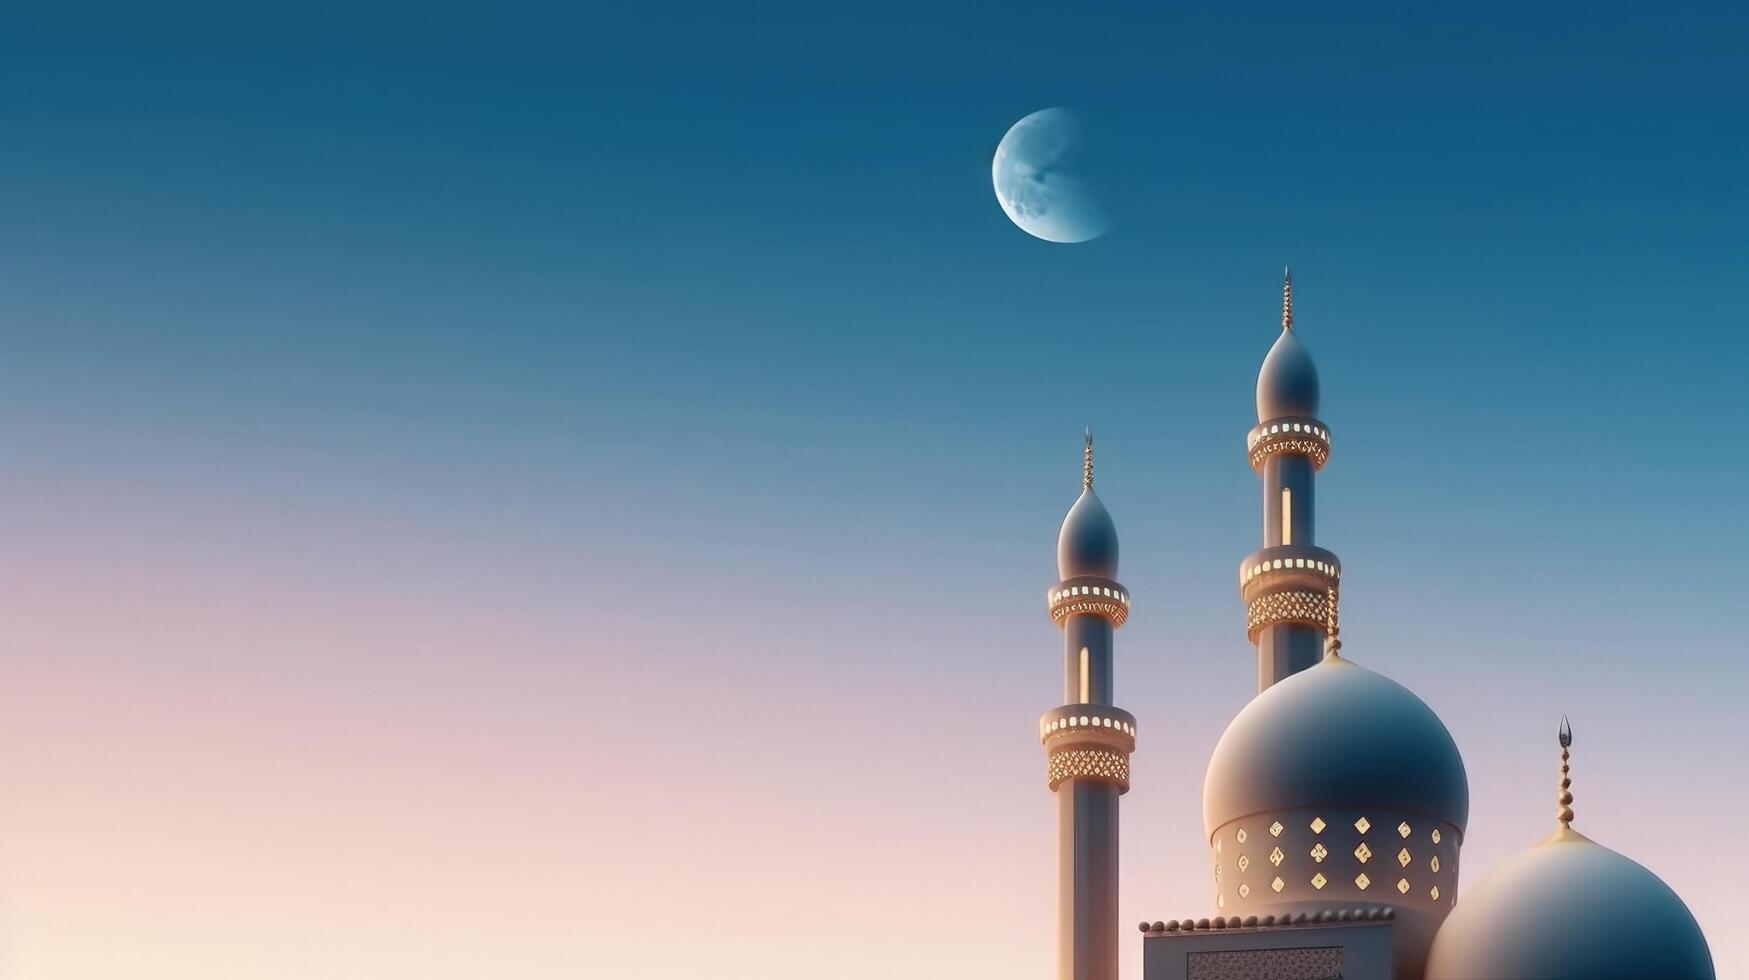 moskéer kupol på mörk blå skymning himmel och halvmåne måne på bakgrund illustration ai generativ foto